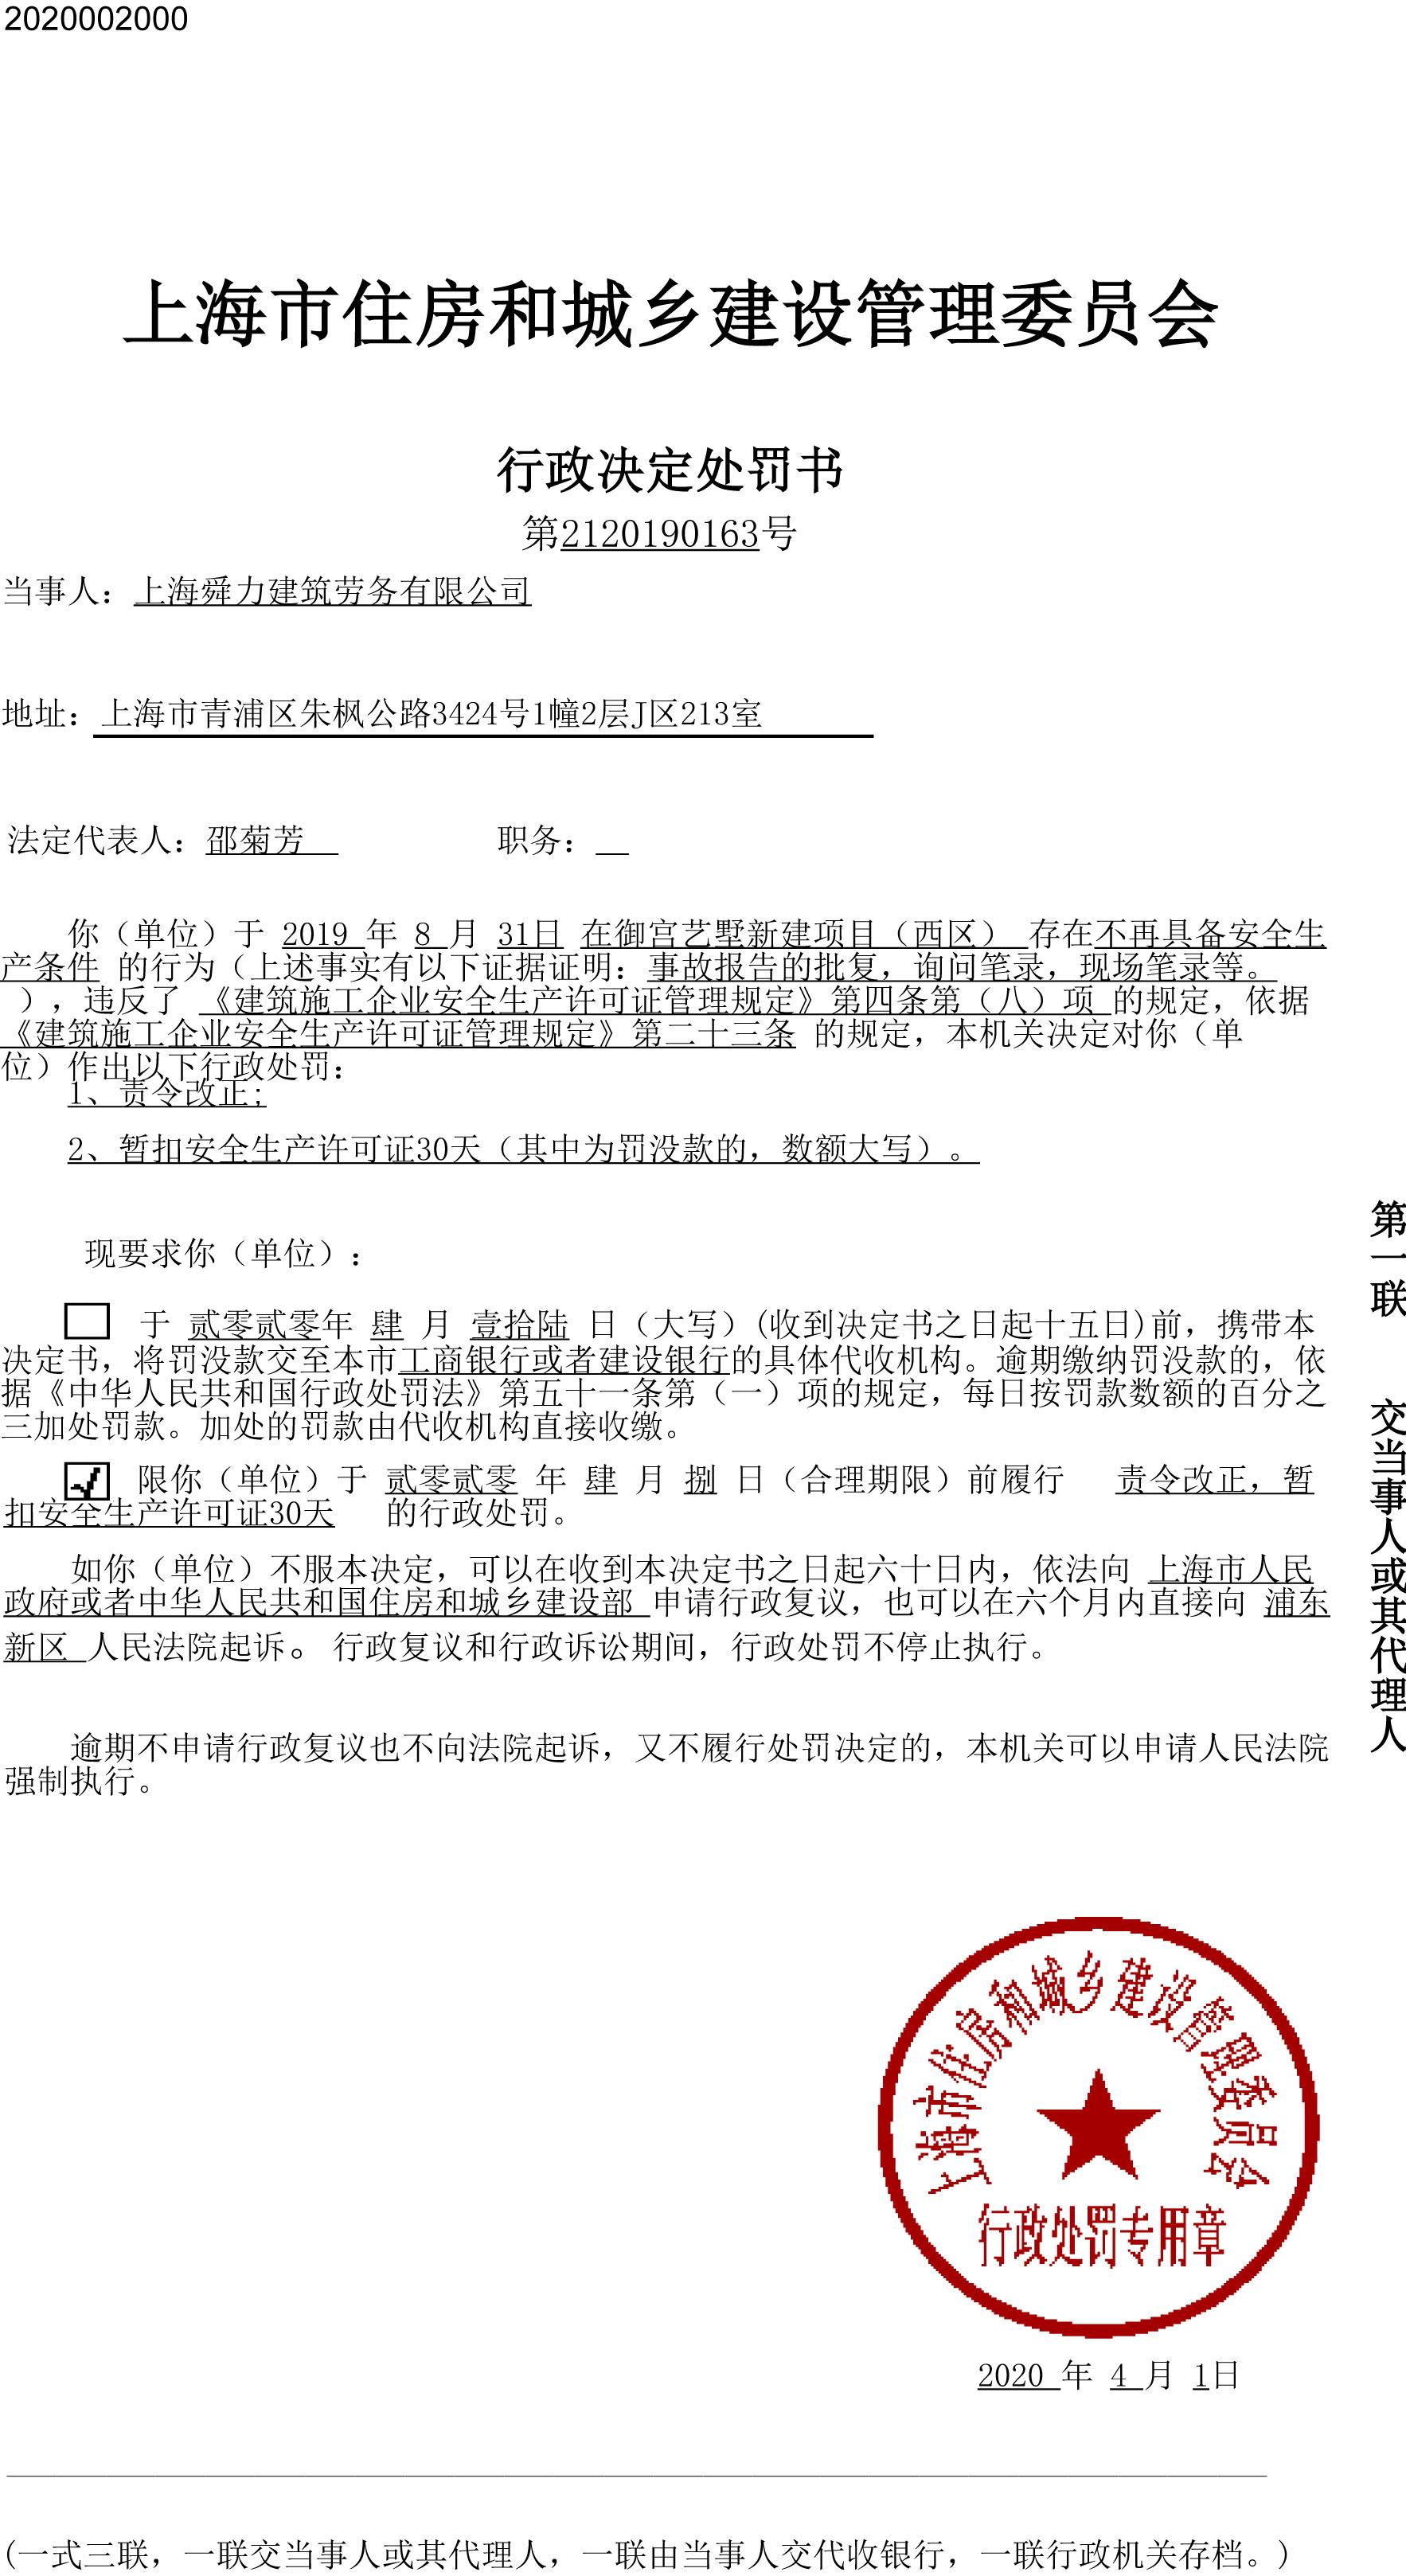 上海舜力建筑劳务有限公司御宫艺墅新建项目违规 被暂扣安全生产许可证